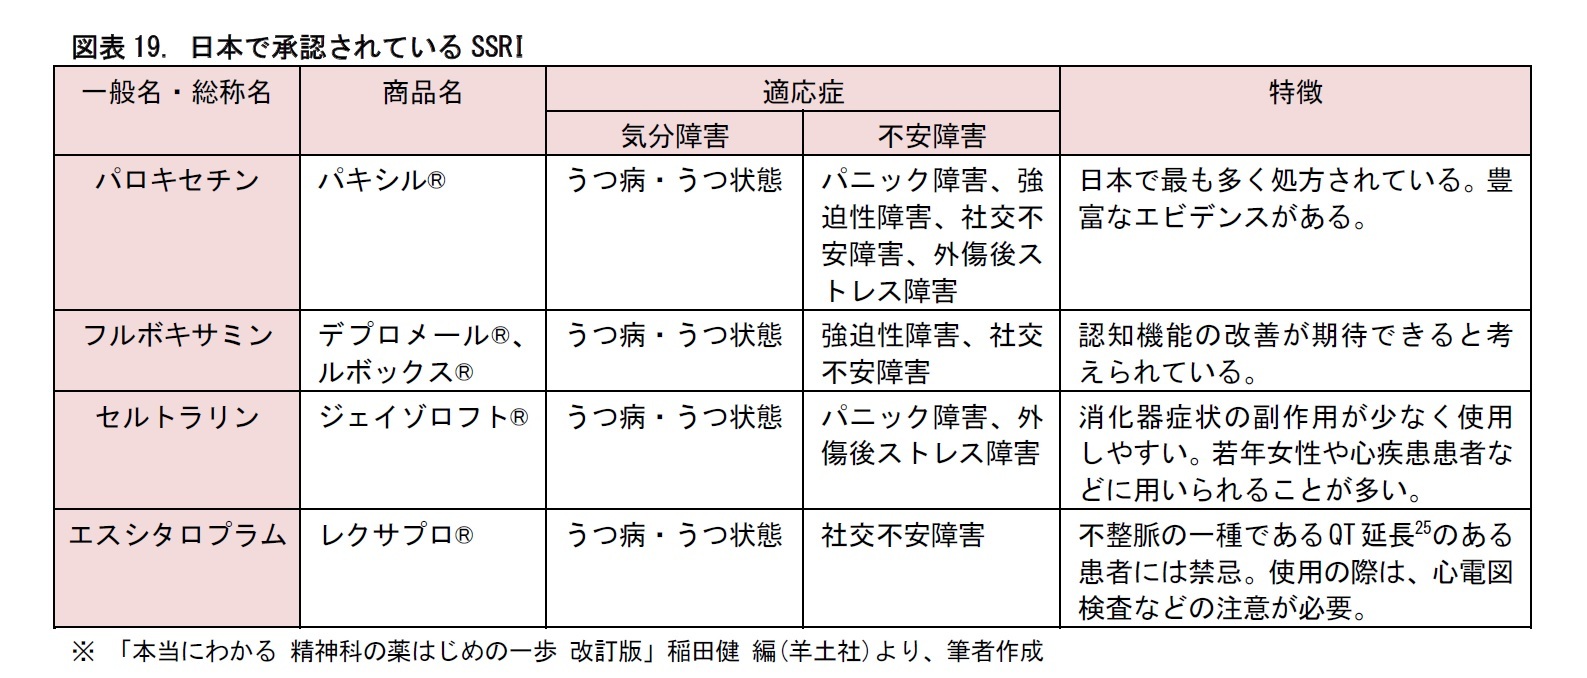 図表19. 日本で承認されているSSRI